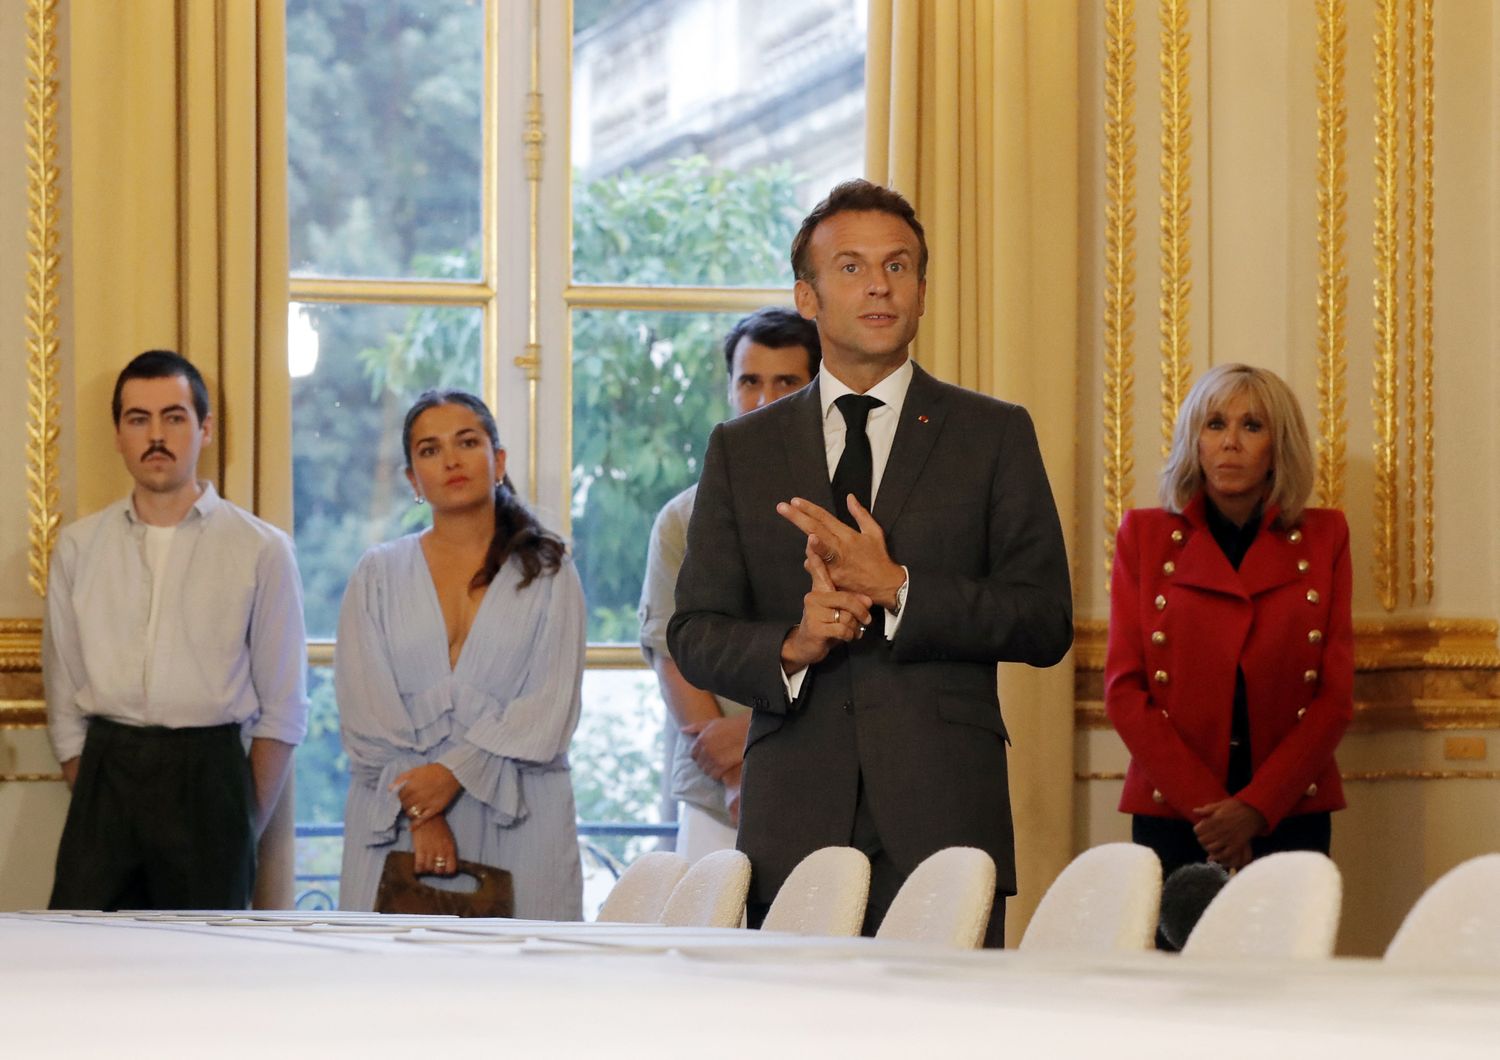 Il nuovo tavolo del Consiglio dei ministri francese, &ldquo;medulla&rdquo;